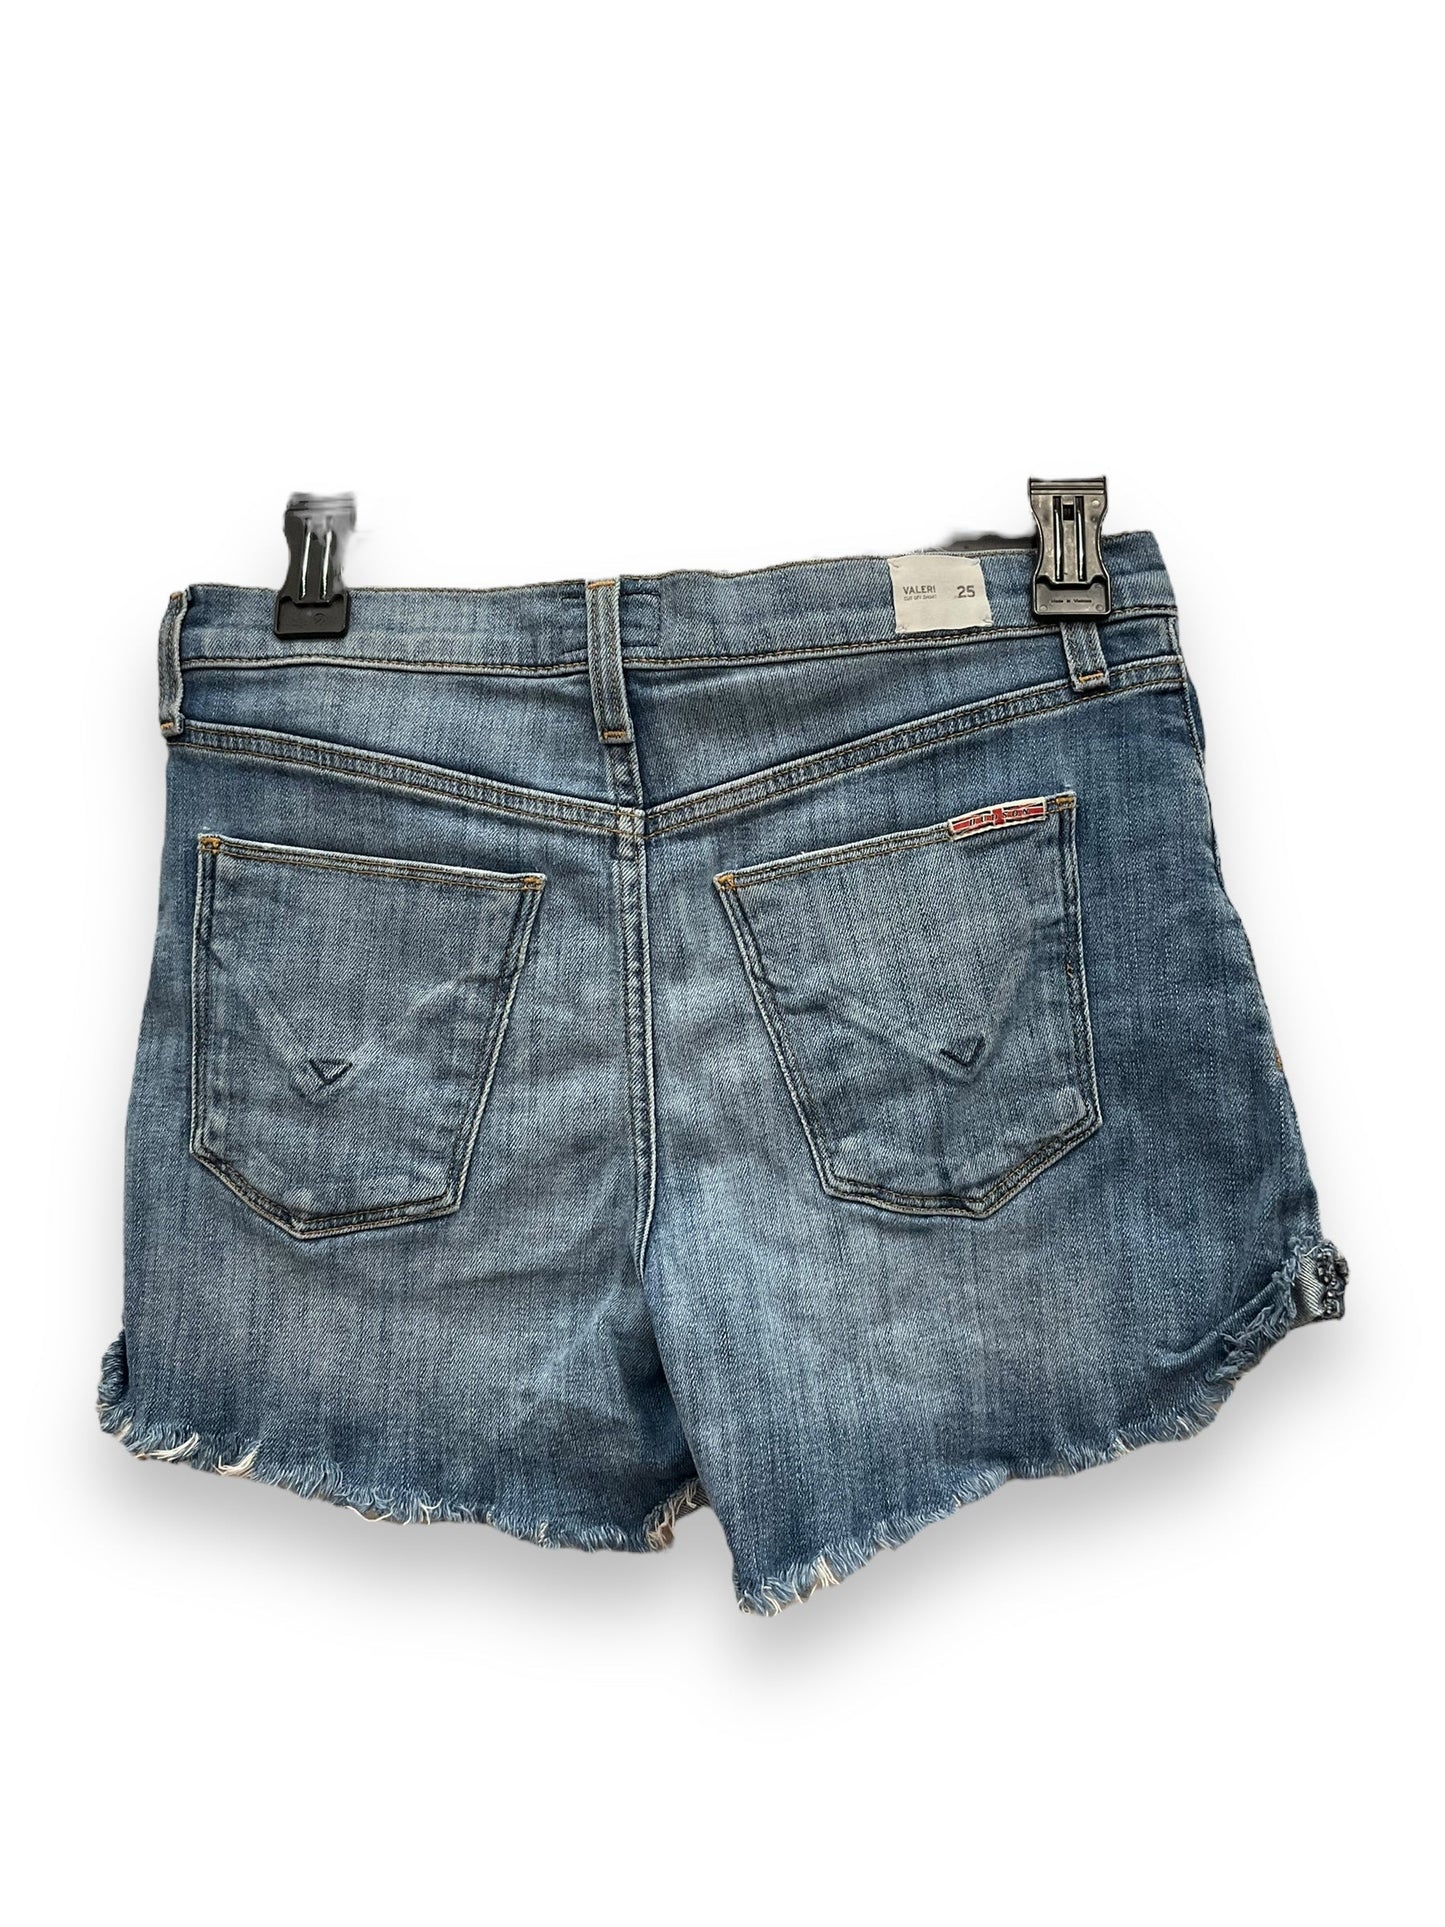 Blue Denim Shorts Hudson, Size 2